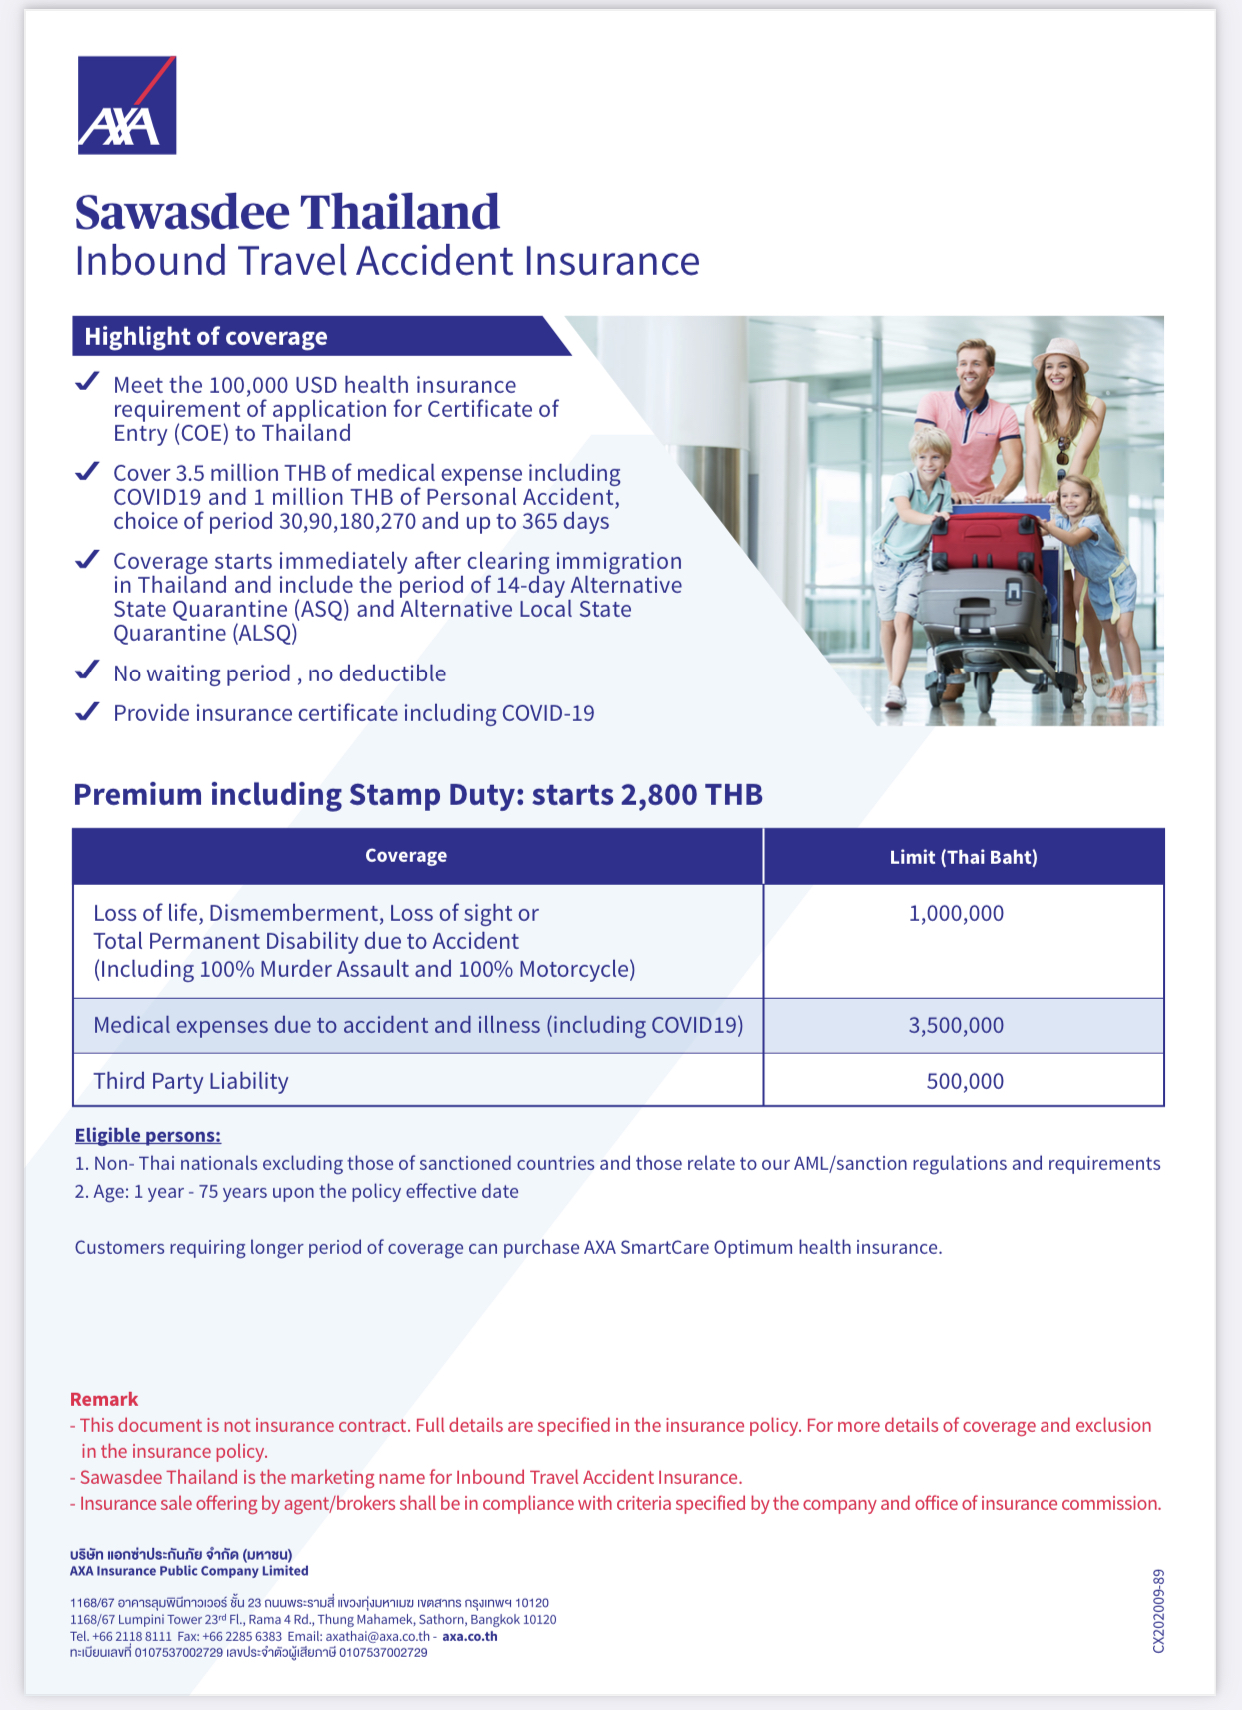 コロナウイルス感染症に特化した保険 - AXA - Sawasdee Thailand: Inbound Travel Insurance